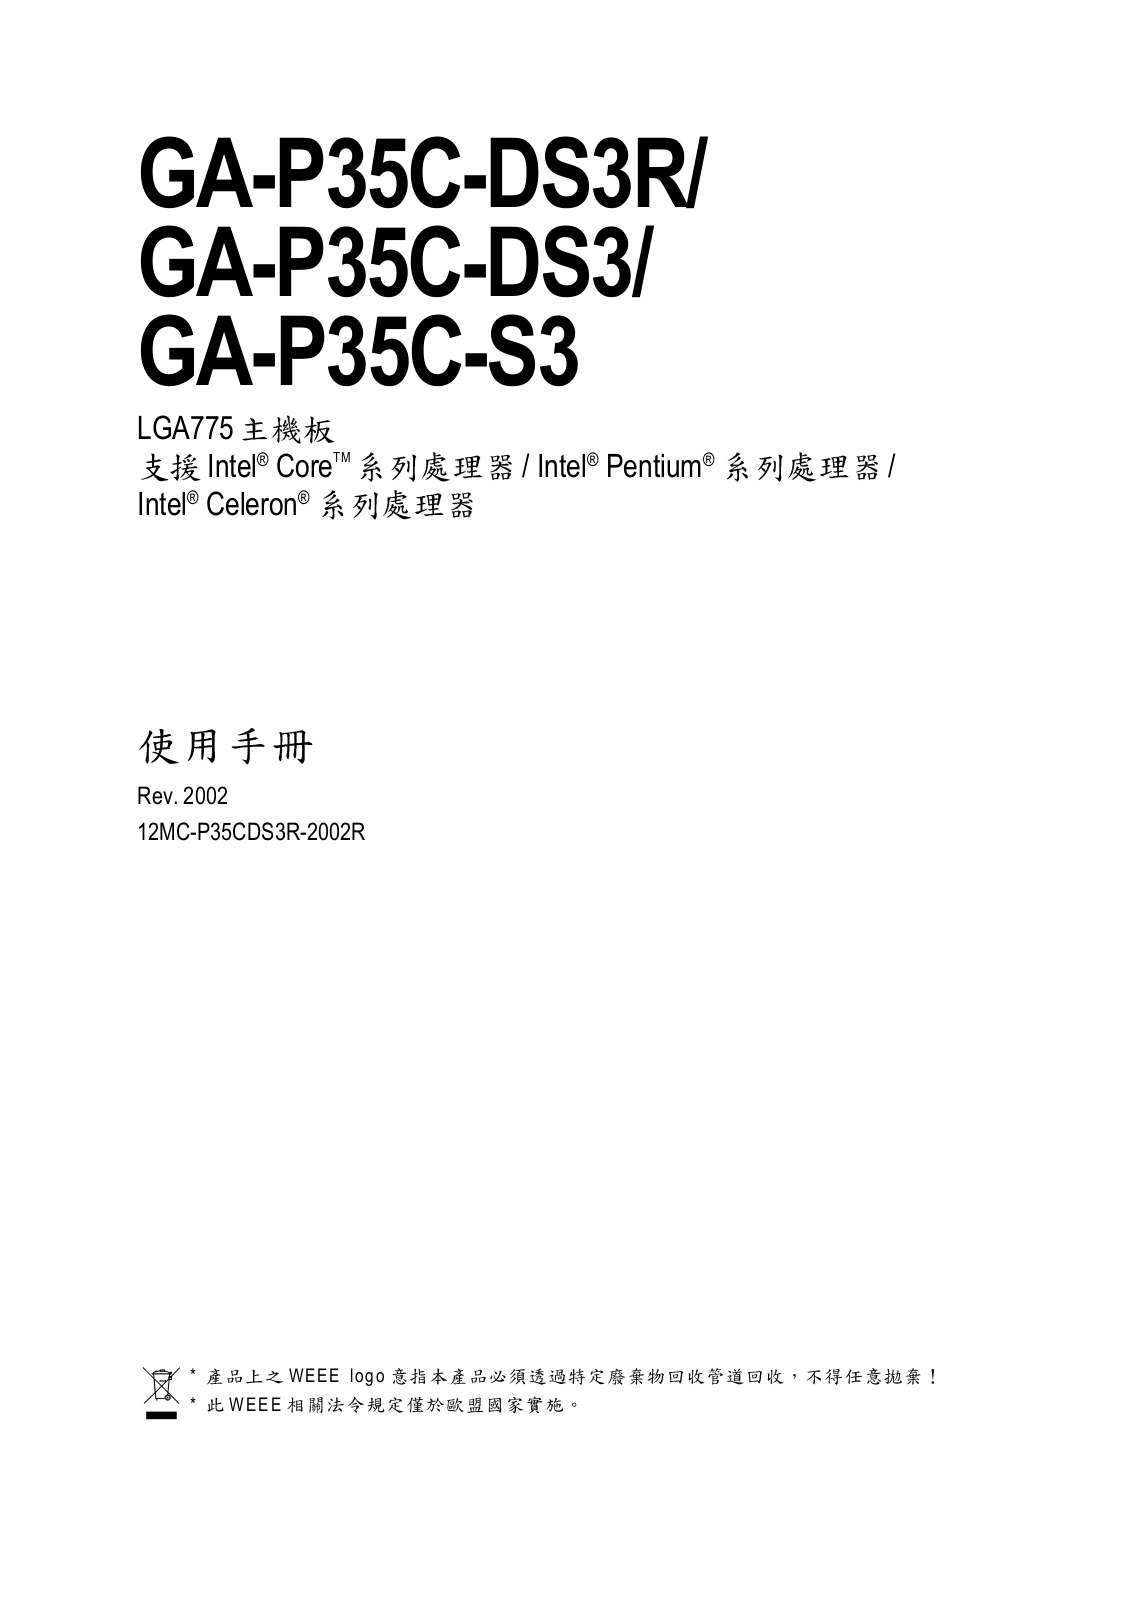 Gigabyte GA-P35C-S3, GA-P35C-DS3, GA-P35C-DS3R User Manual